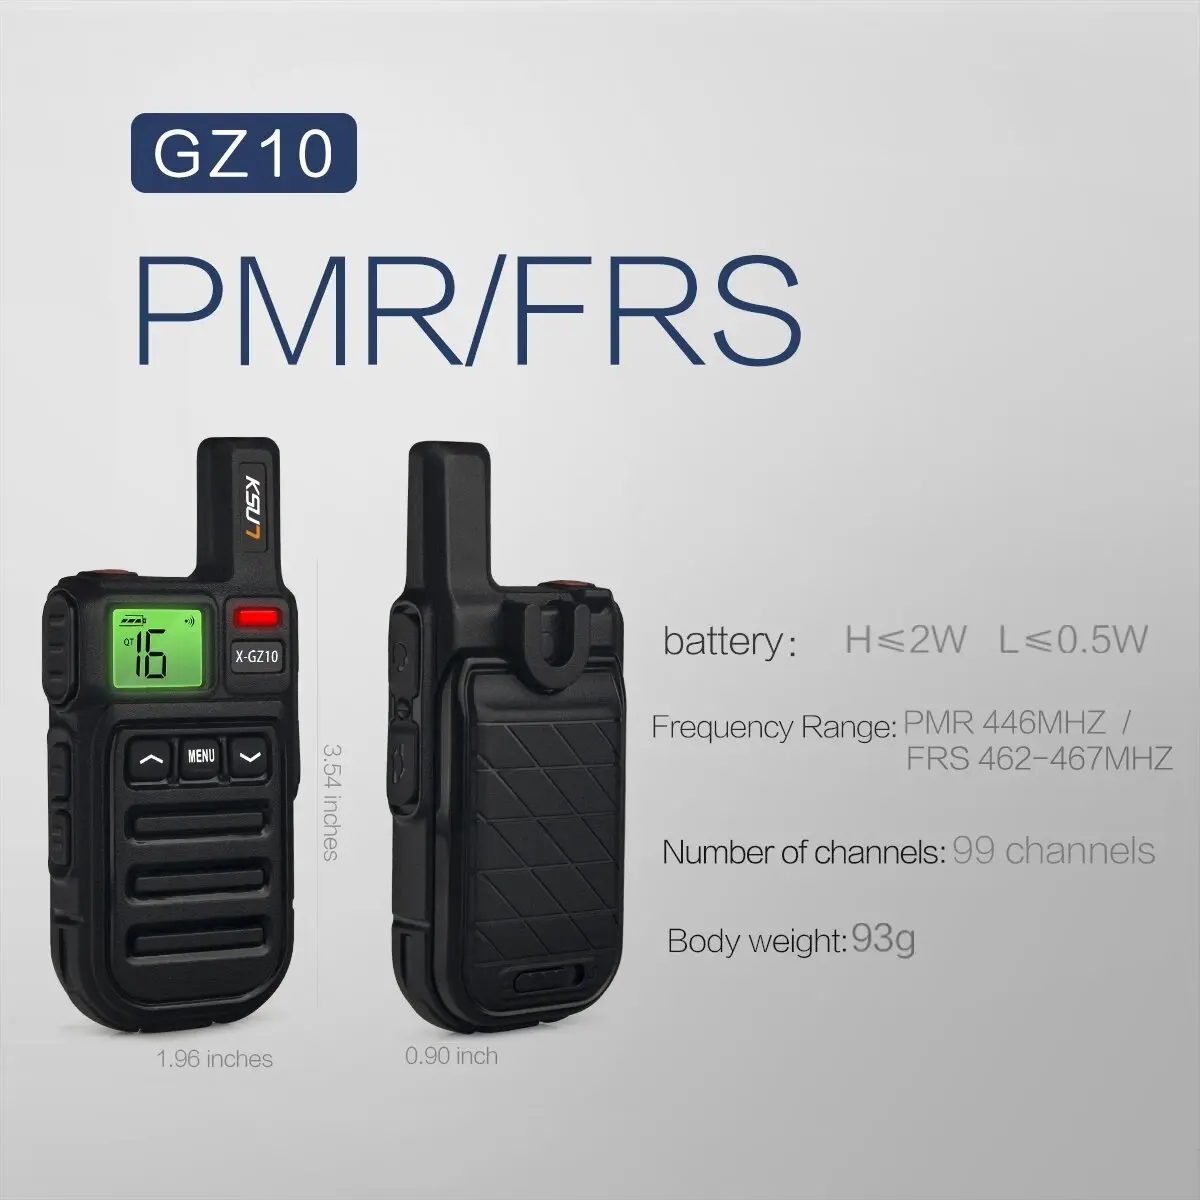 Мини-Рация Европейской Разрешенной Частоты PMR446 Домофон FRS Двухстороннее Радио для Ресторана Охотничье Радио KSUN GZ10 1 Или 2ШТ - 1